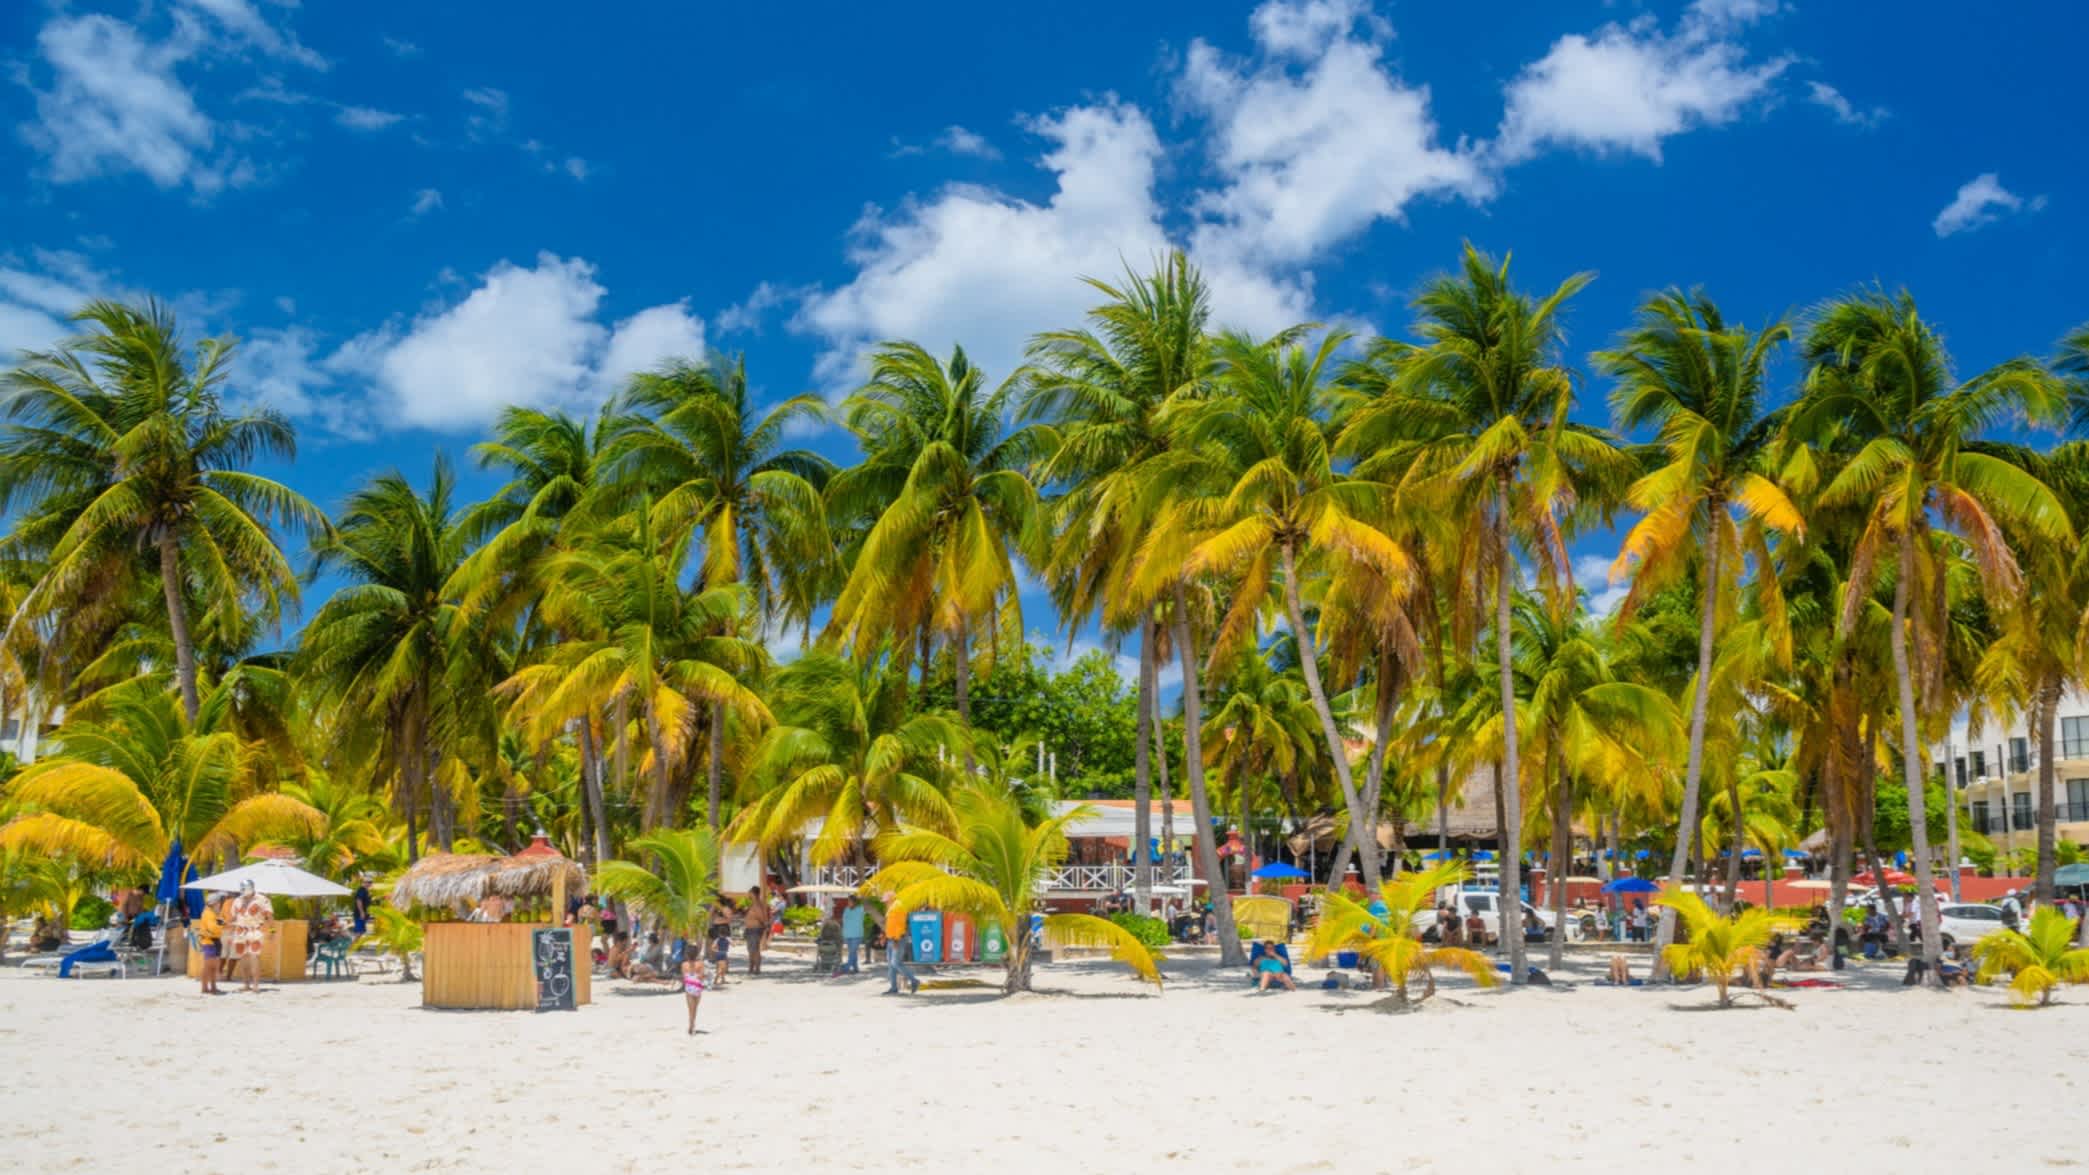 Der Strand von Isla Mujeres an einem sonnigen Tag, Cancun, Yucatan, Mexiko.

